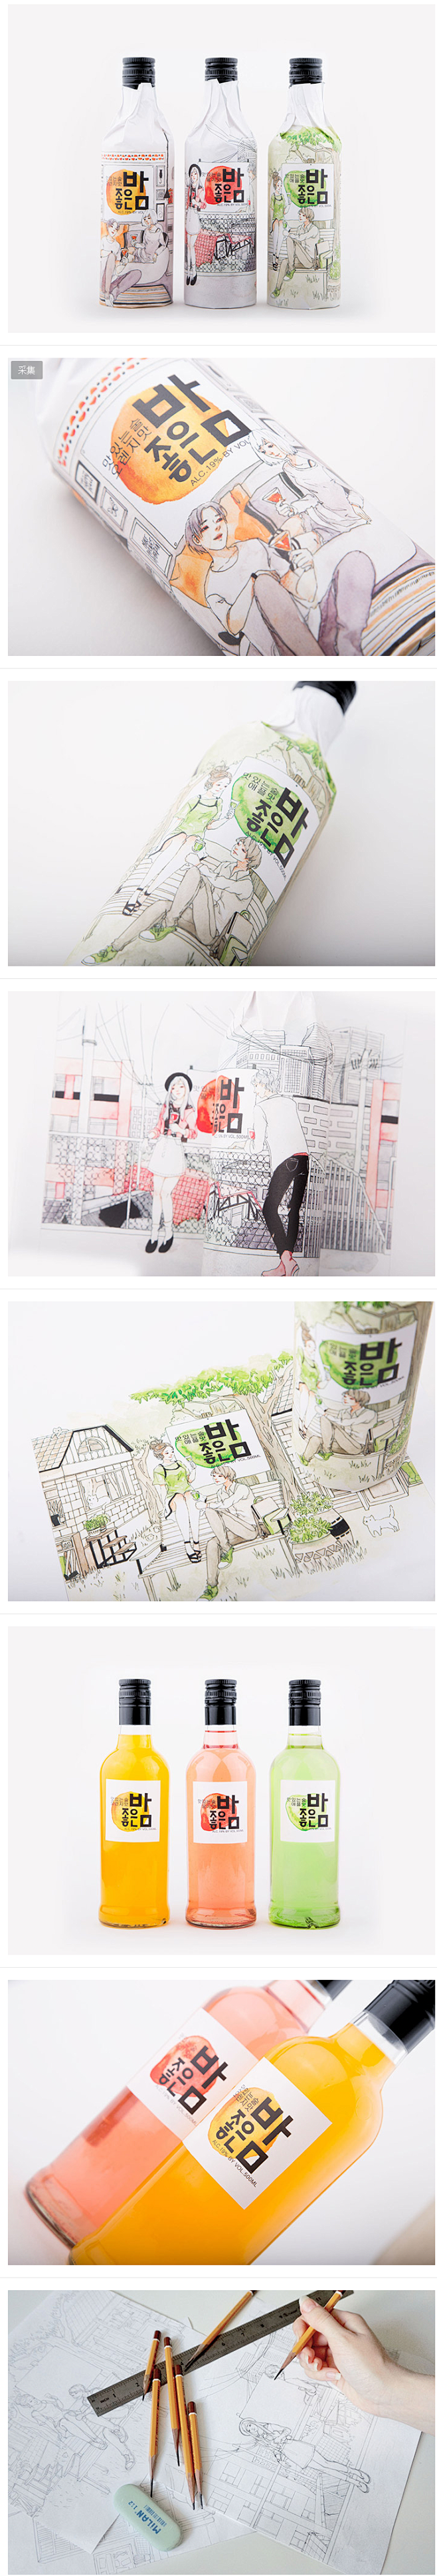 插画风的韩国烧酒包装 设计圈 展示 设计...